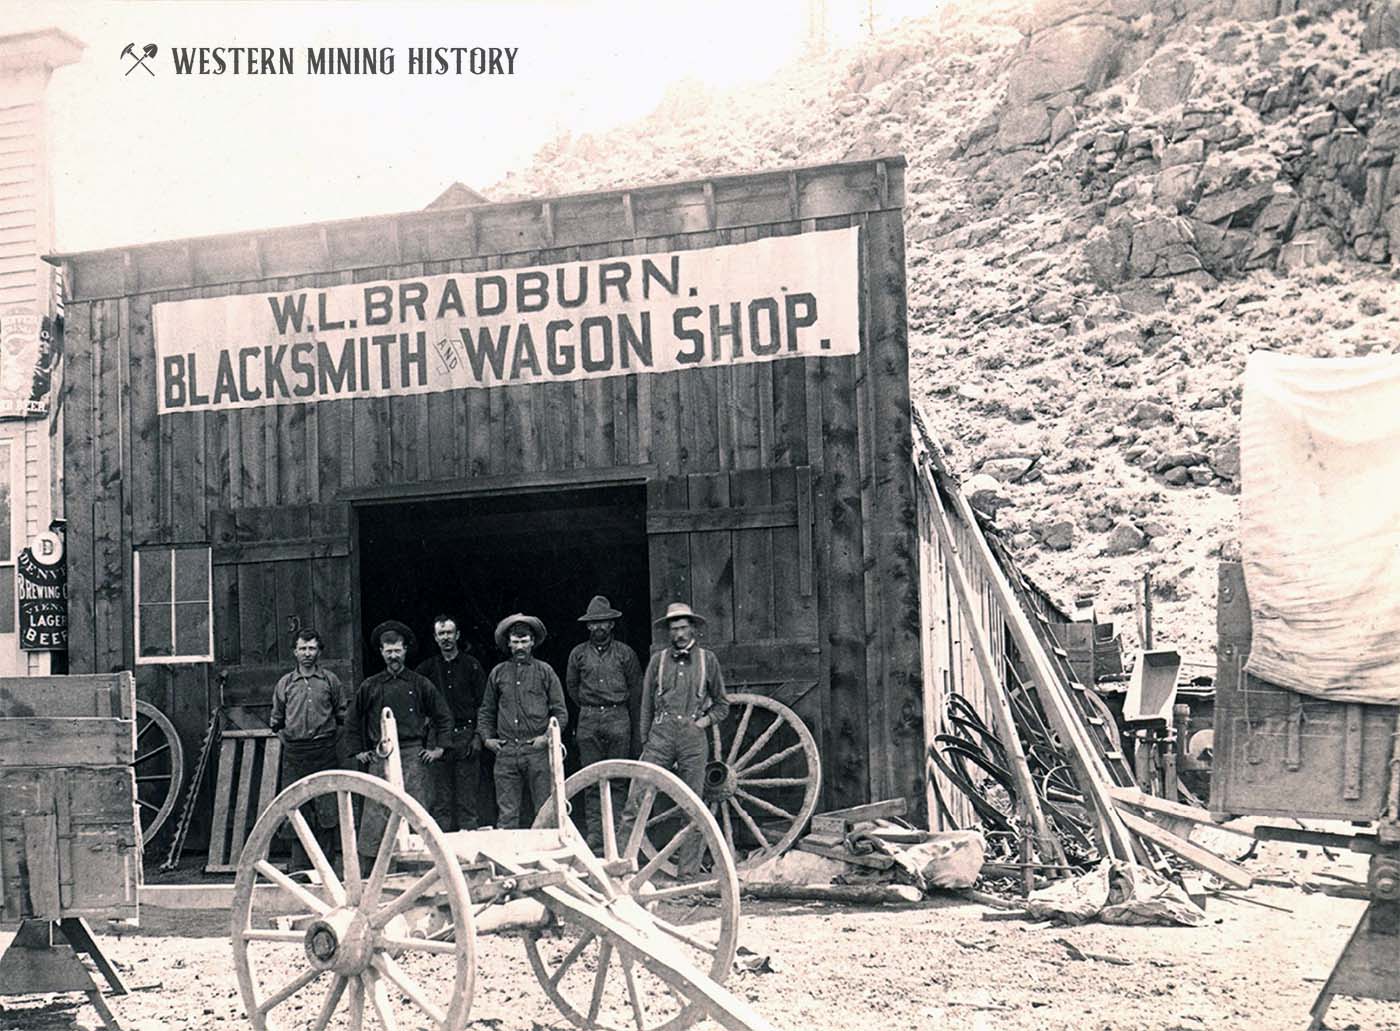 The W.L. Bradburn Blacksmith & Wagon Shop